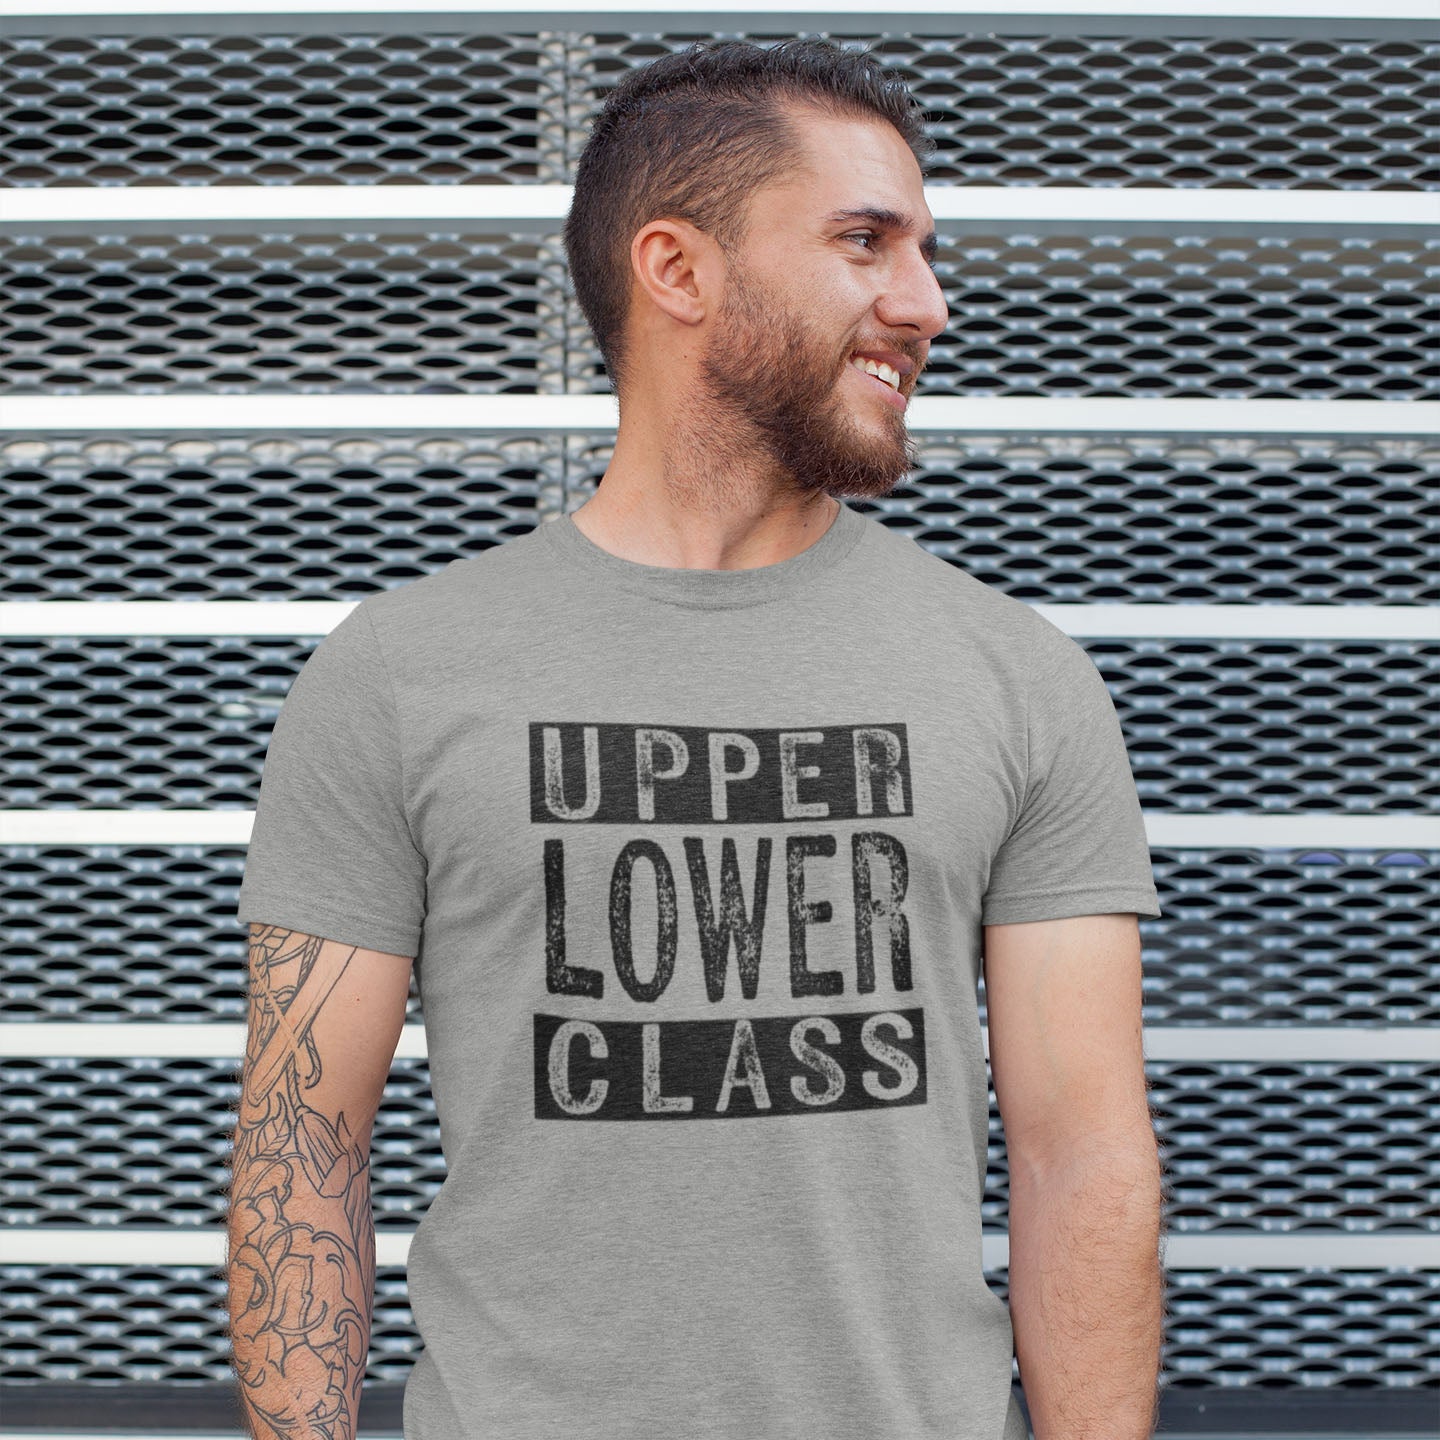 Upper Lower Class - Unisex Jersey Short Sleeve Tee